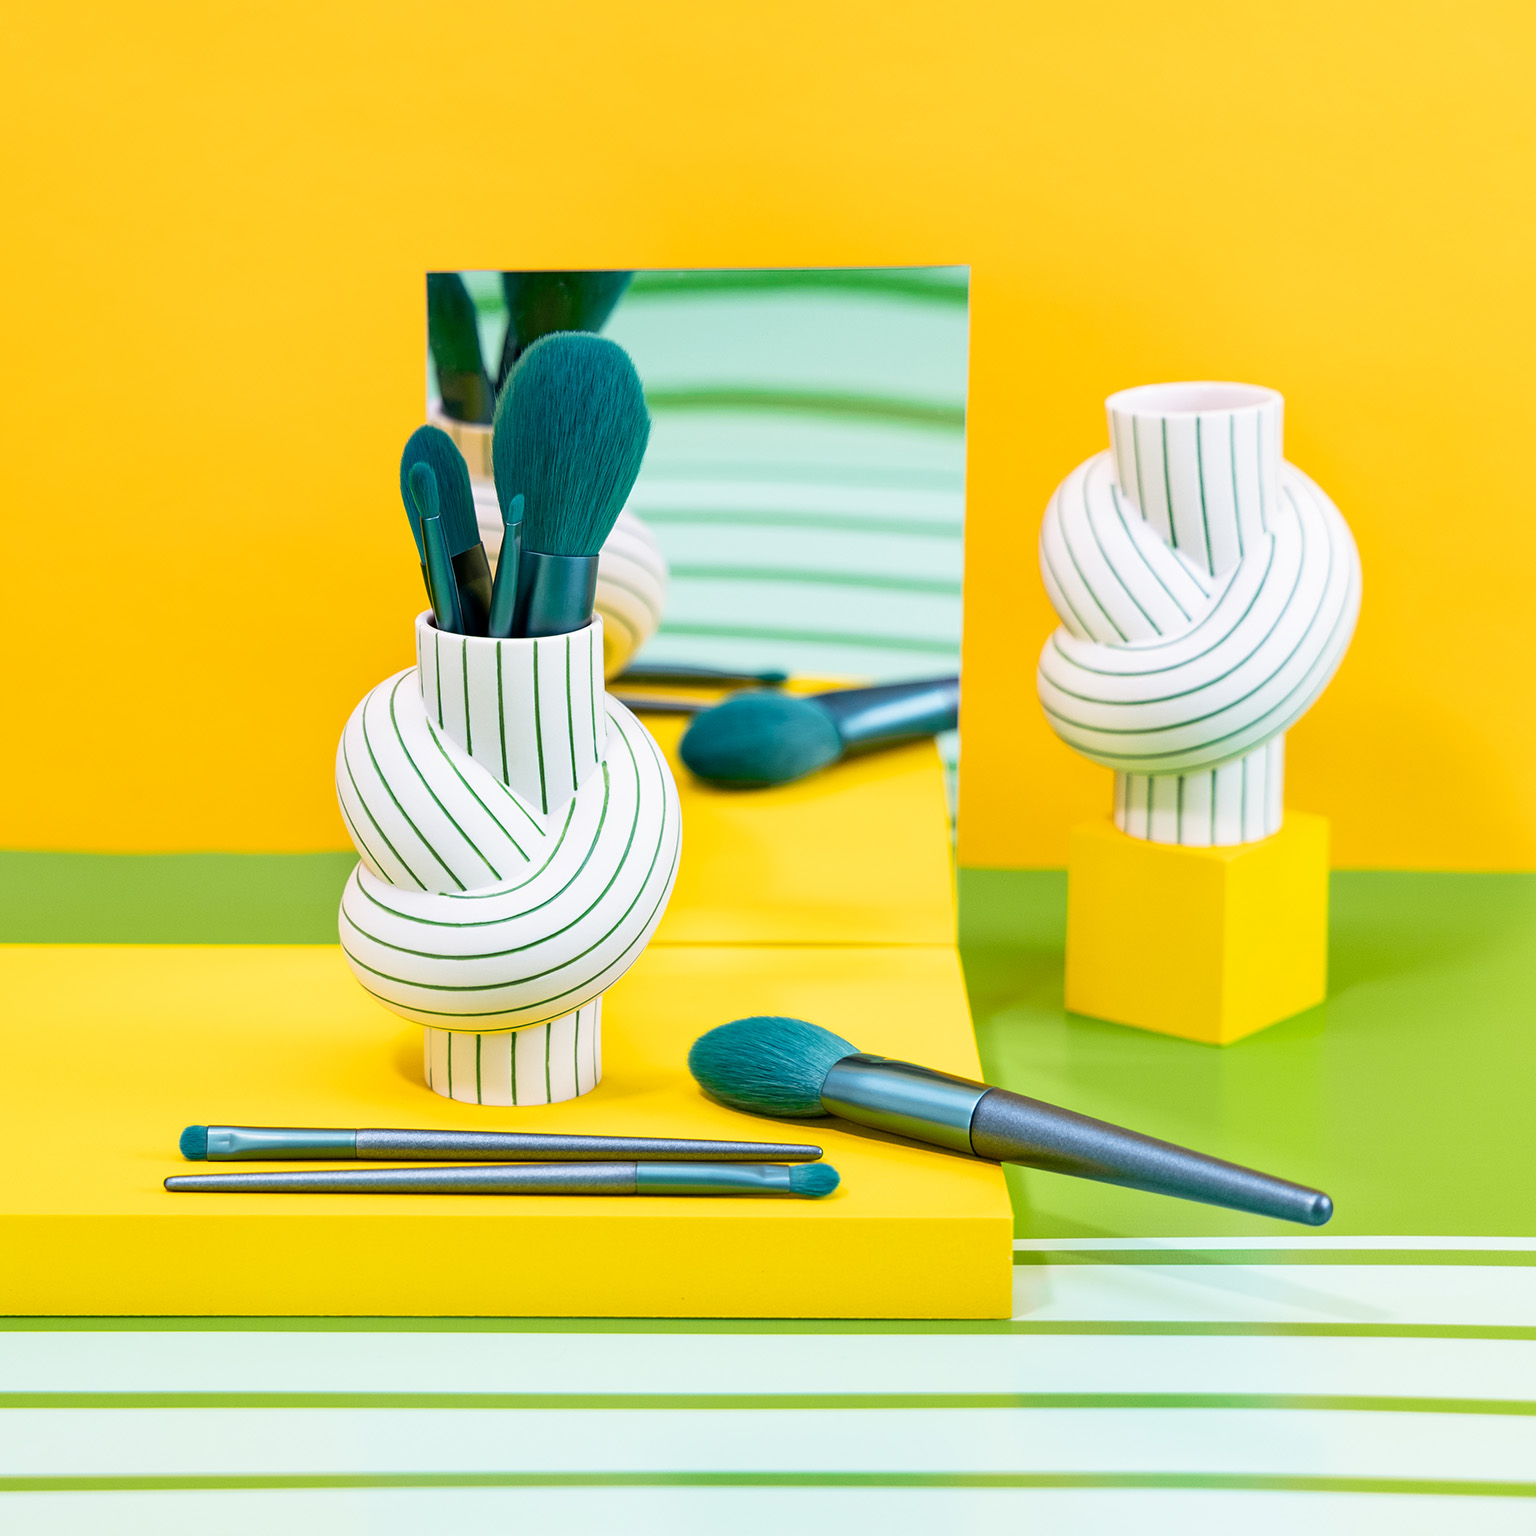 Vase Node Stripes Apple mit petrolfarbigen Make-up Pinseln vor gelbem Hintergrund mit weiß-grünen Streifen und Spiegel.